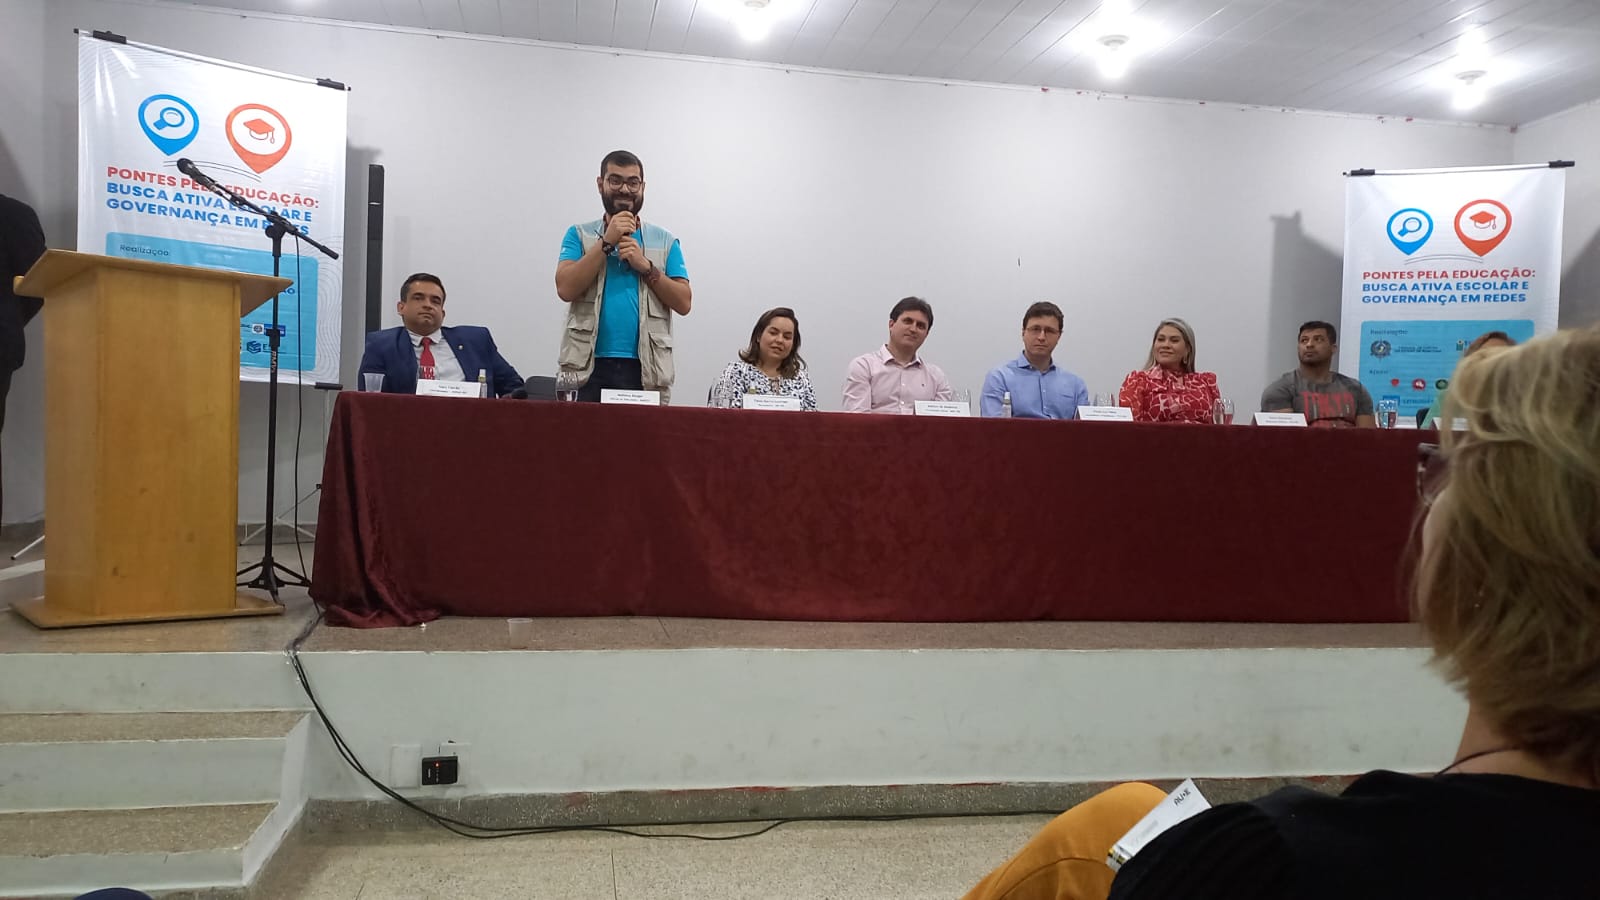 Evento acontece em Ariquemes/RO e tem como objetivo aprimorar o controle das políticas educacionais aos municípios e ao Estado de Rondônia